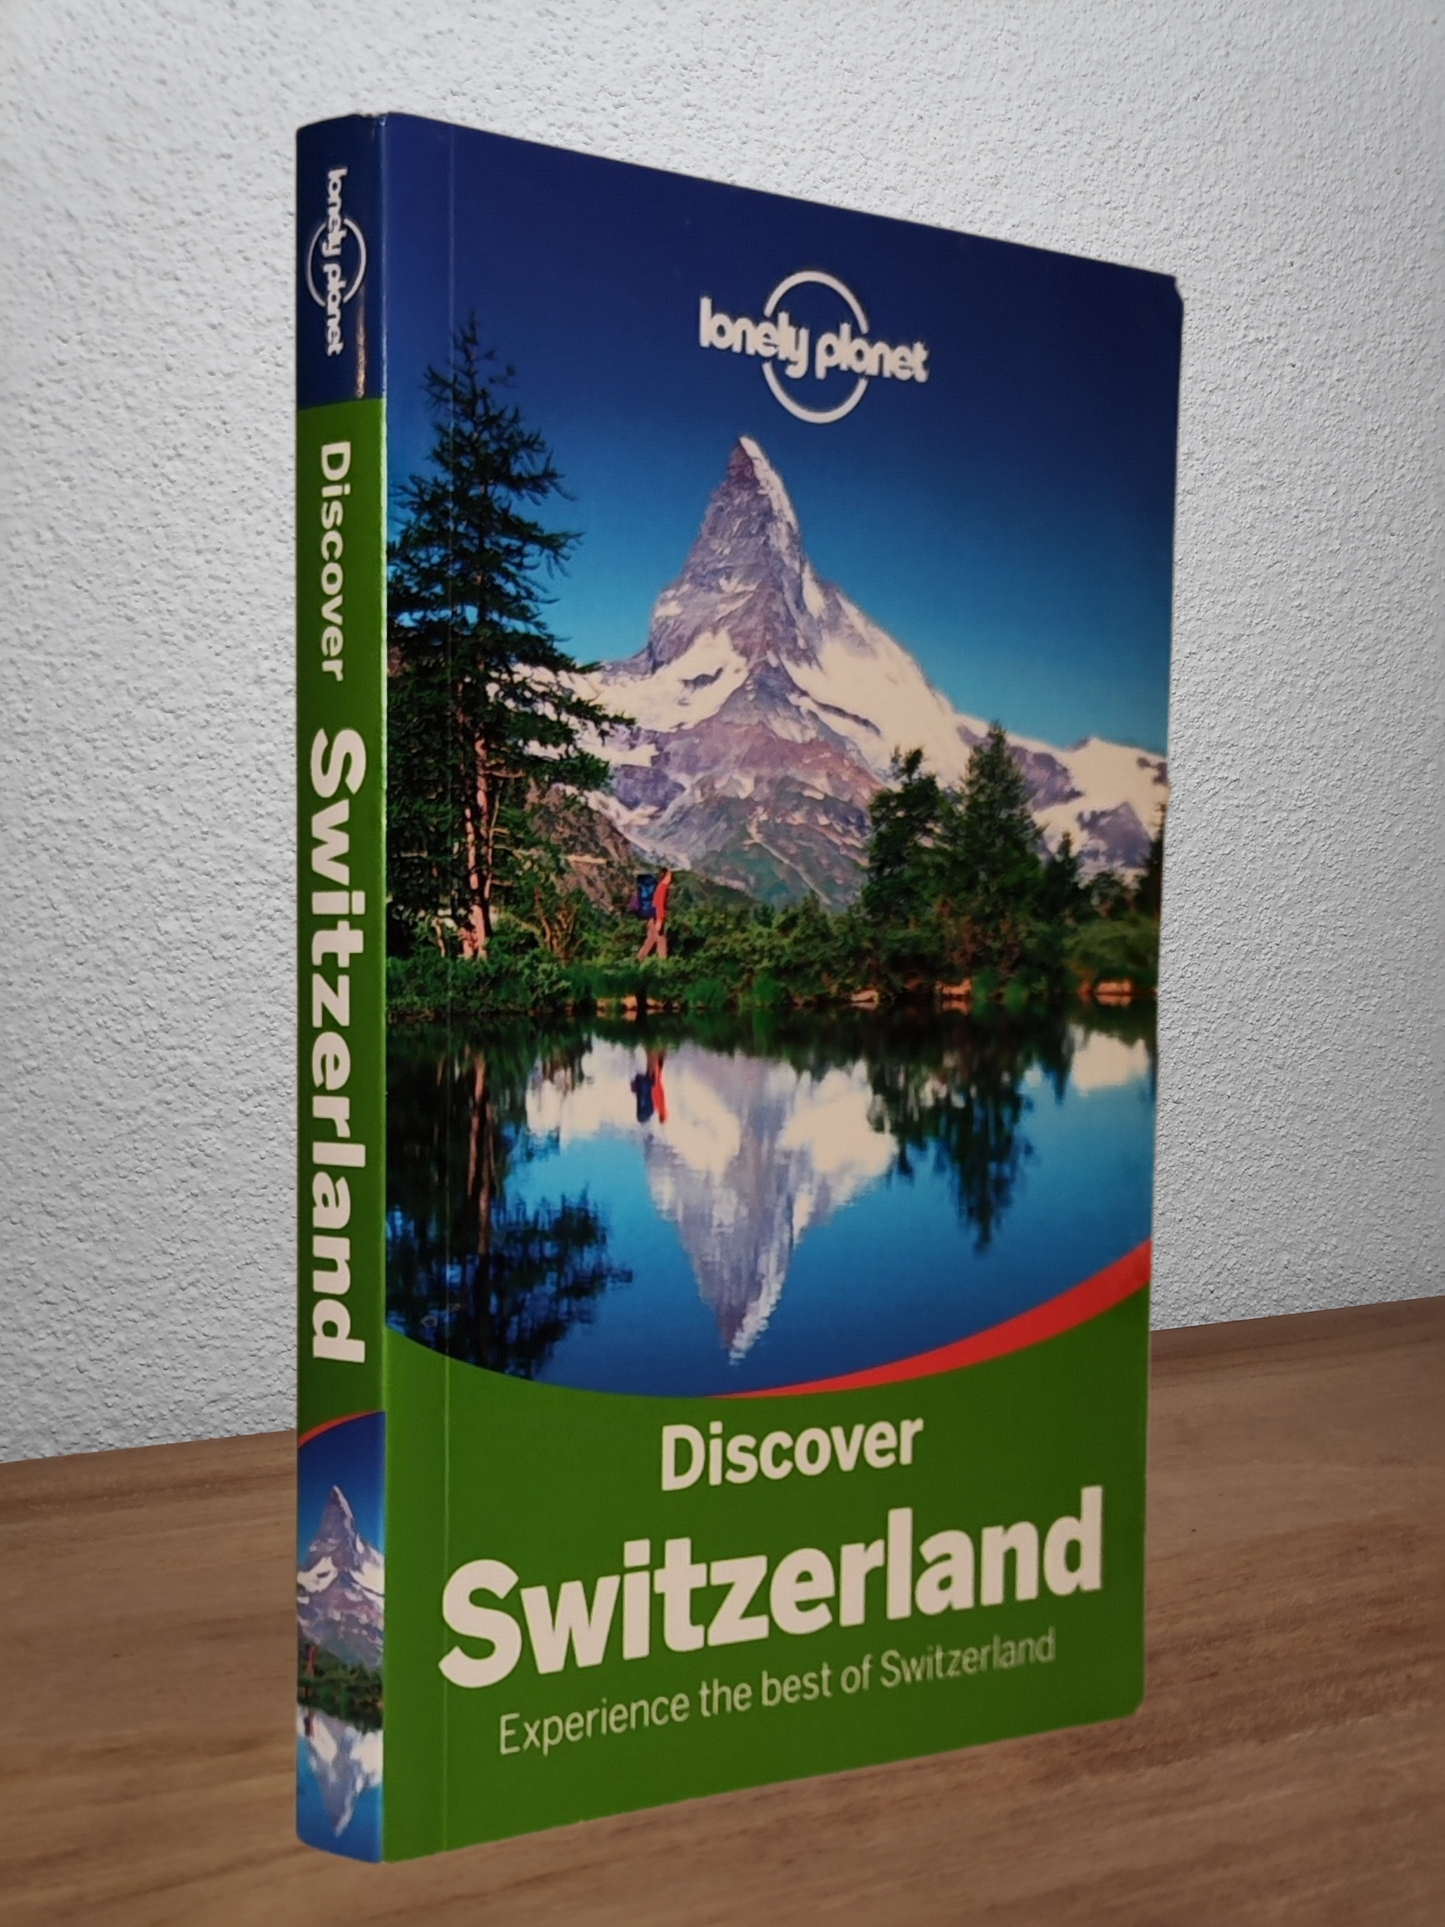  Lonely Planet - Switzerland (2015) - Second-hand english book to deliver in Zurich & Switzerland